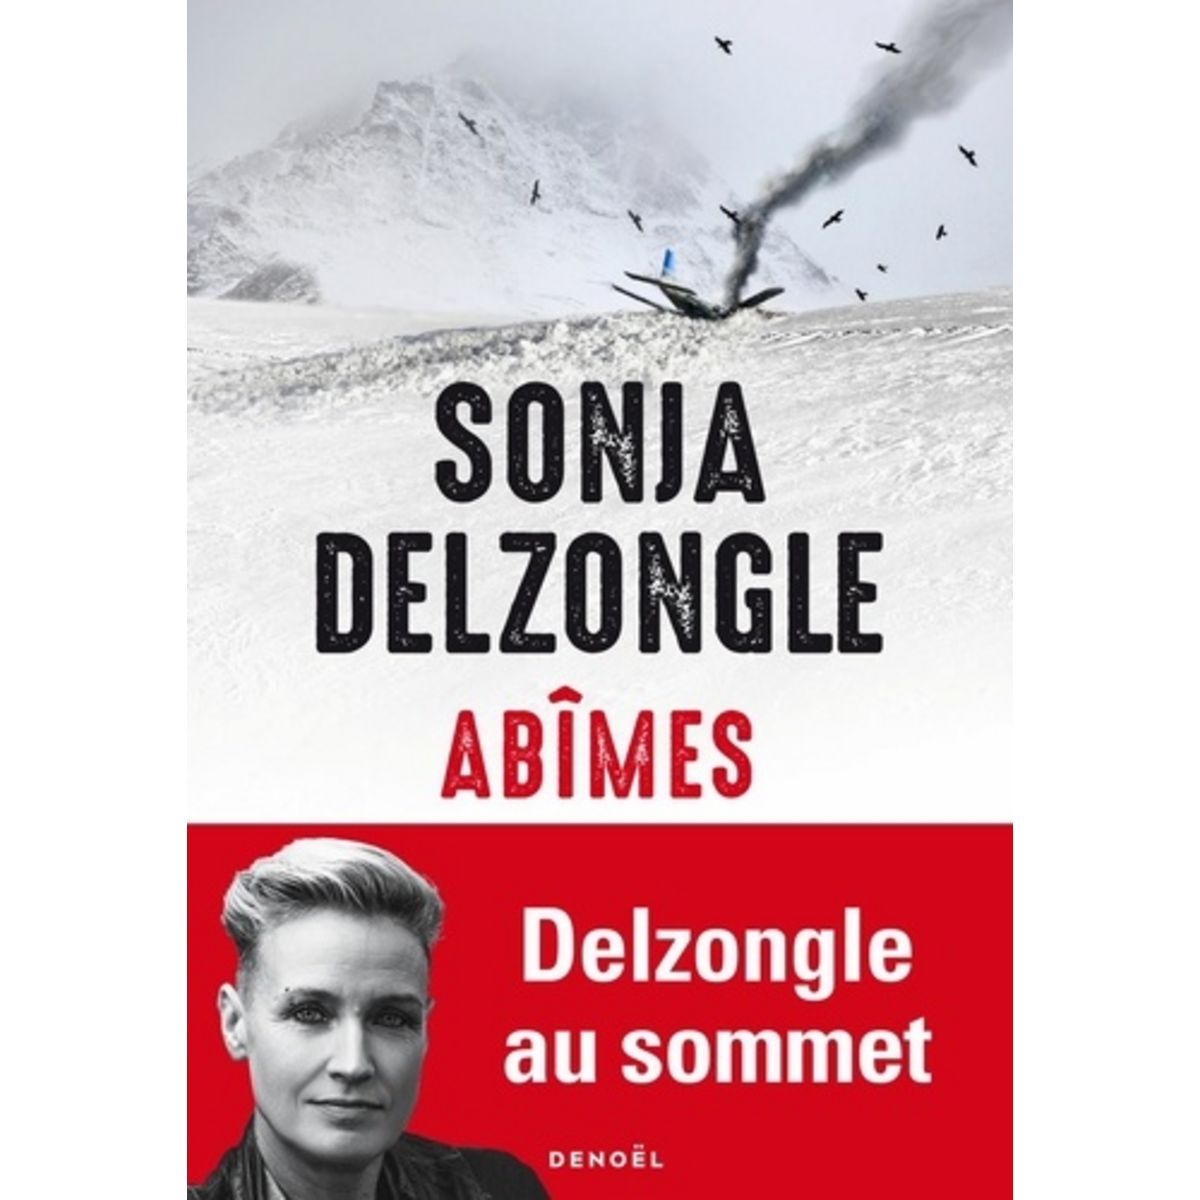  ABIMES, Delzongle Sonja